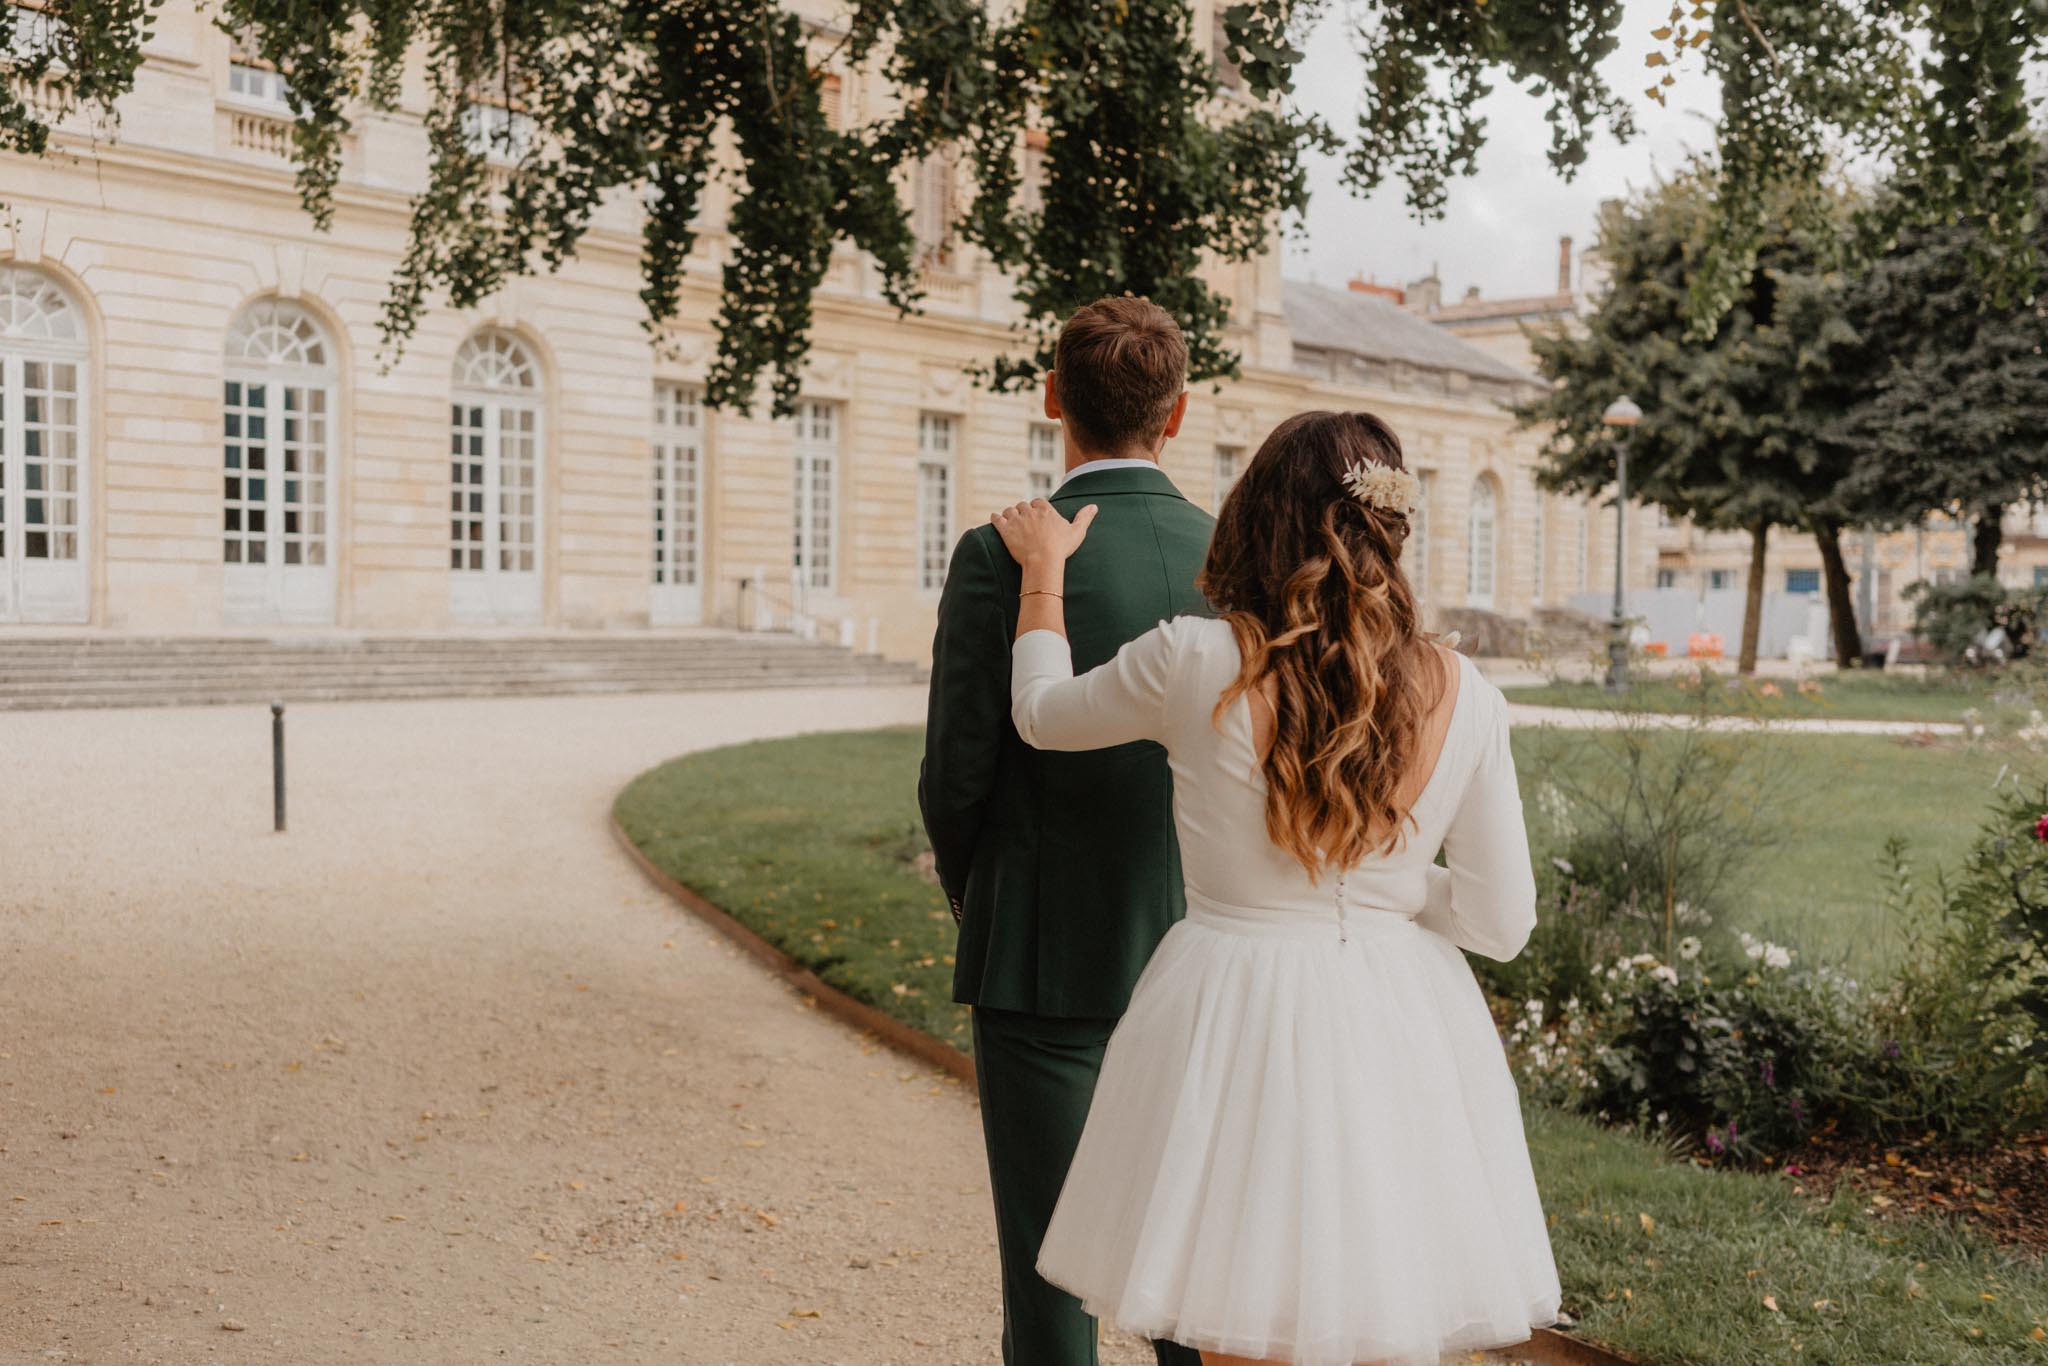 Mariage en Charente